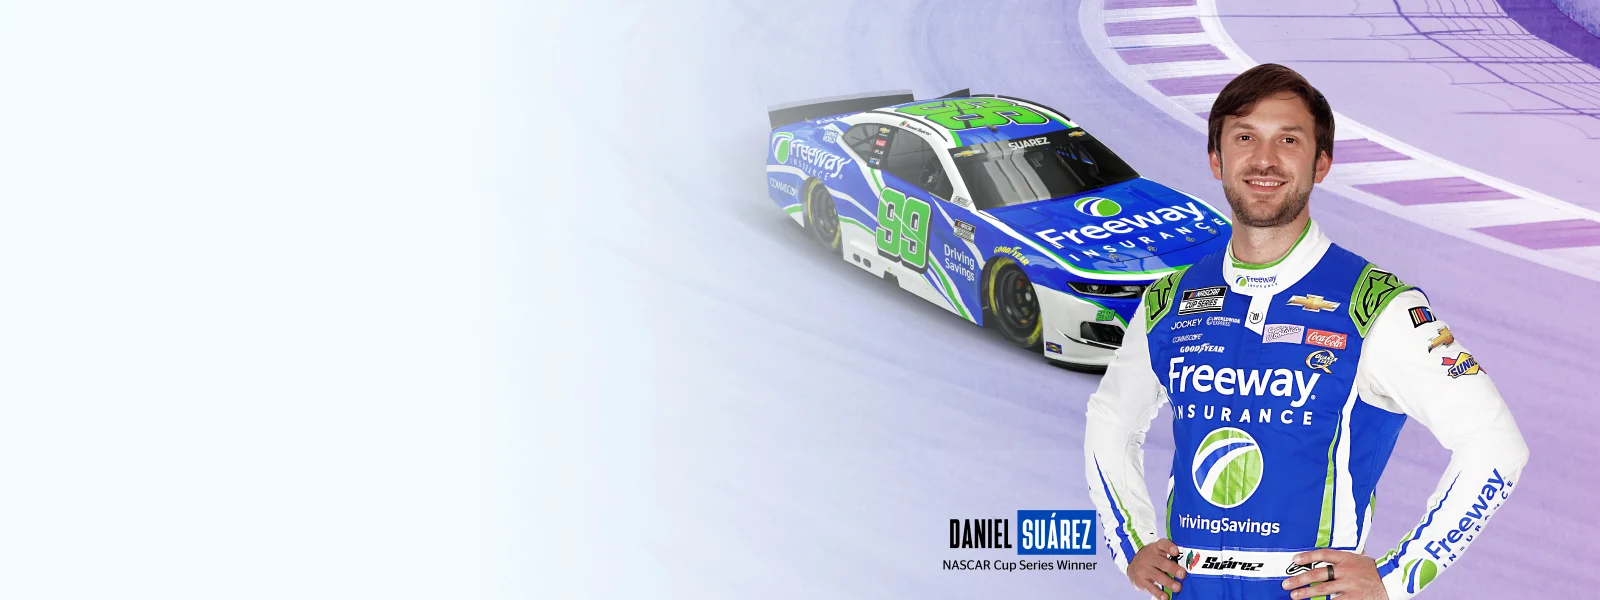 Daniel Suarez de pie frente a su auto de carreras NASCAR #99